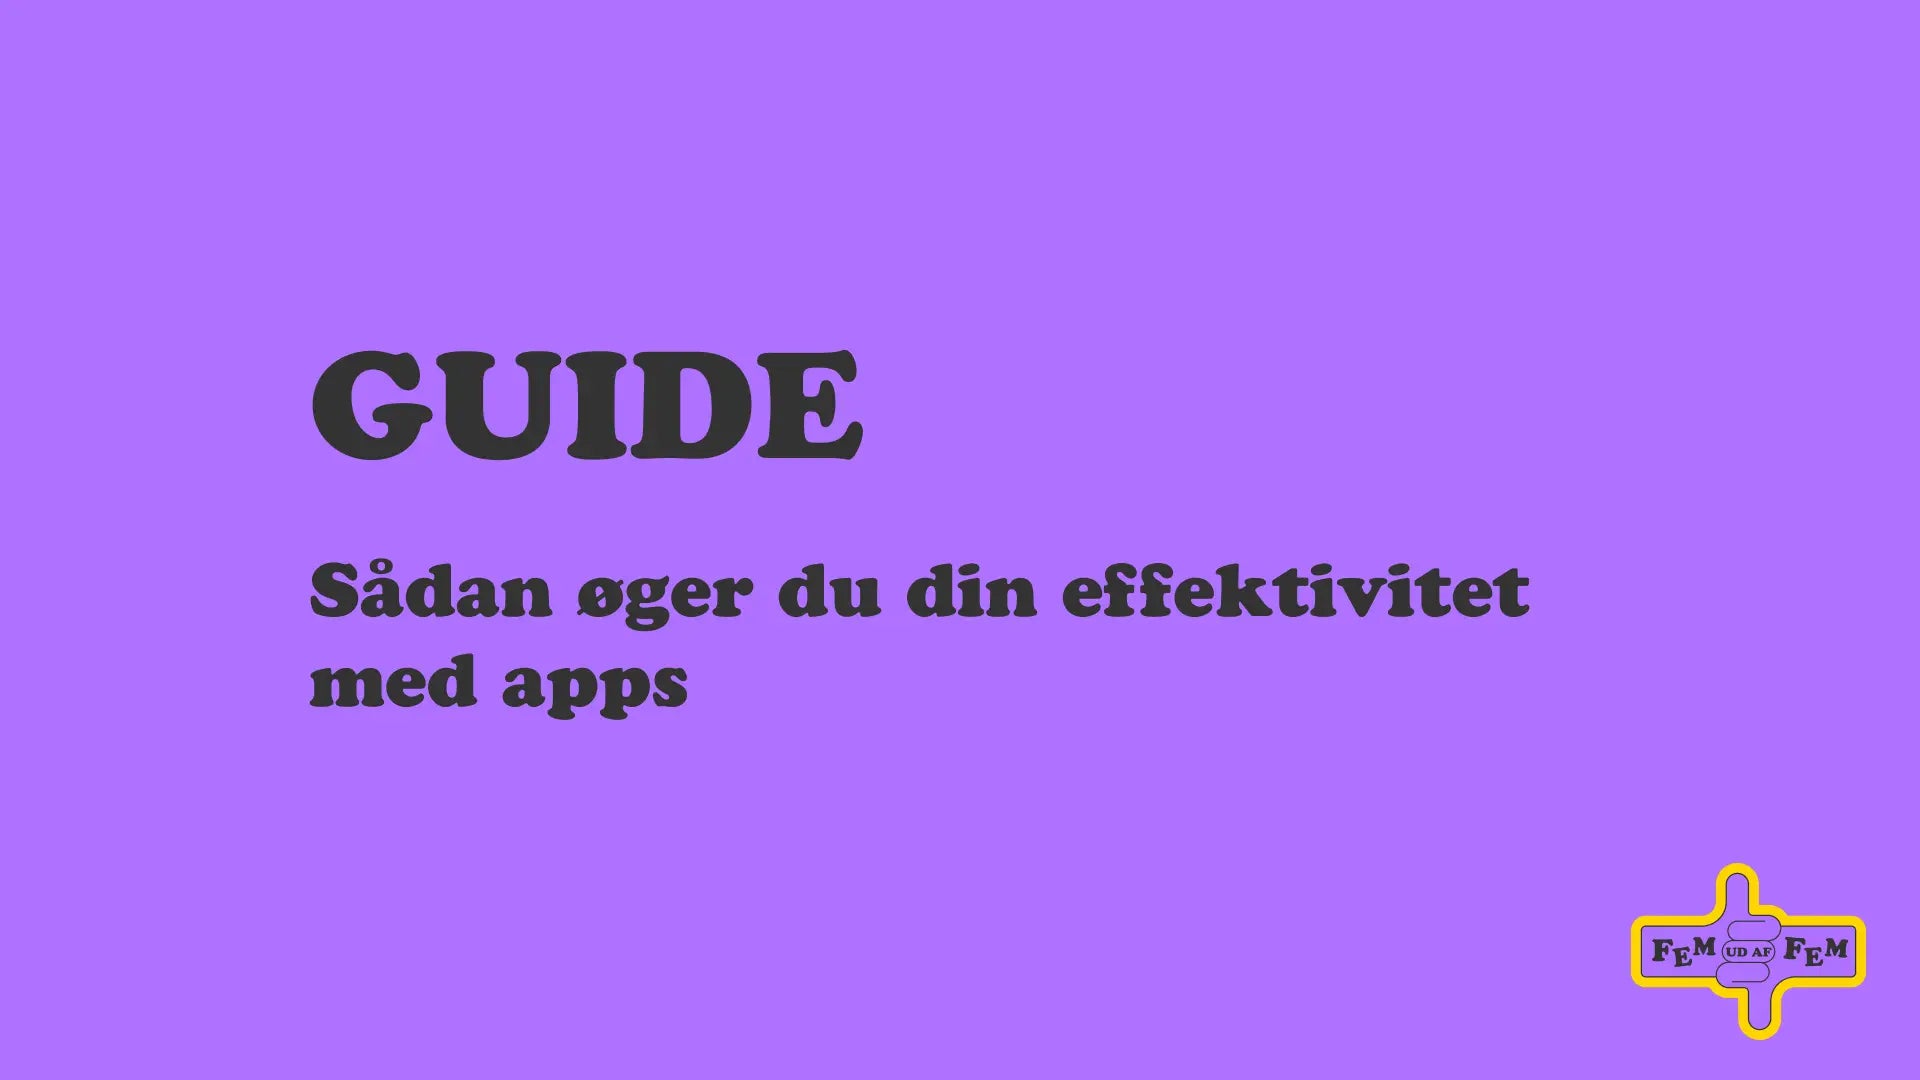 Guide: Sådan øger du din effektivitet med apps